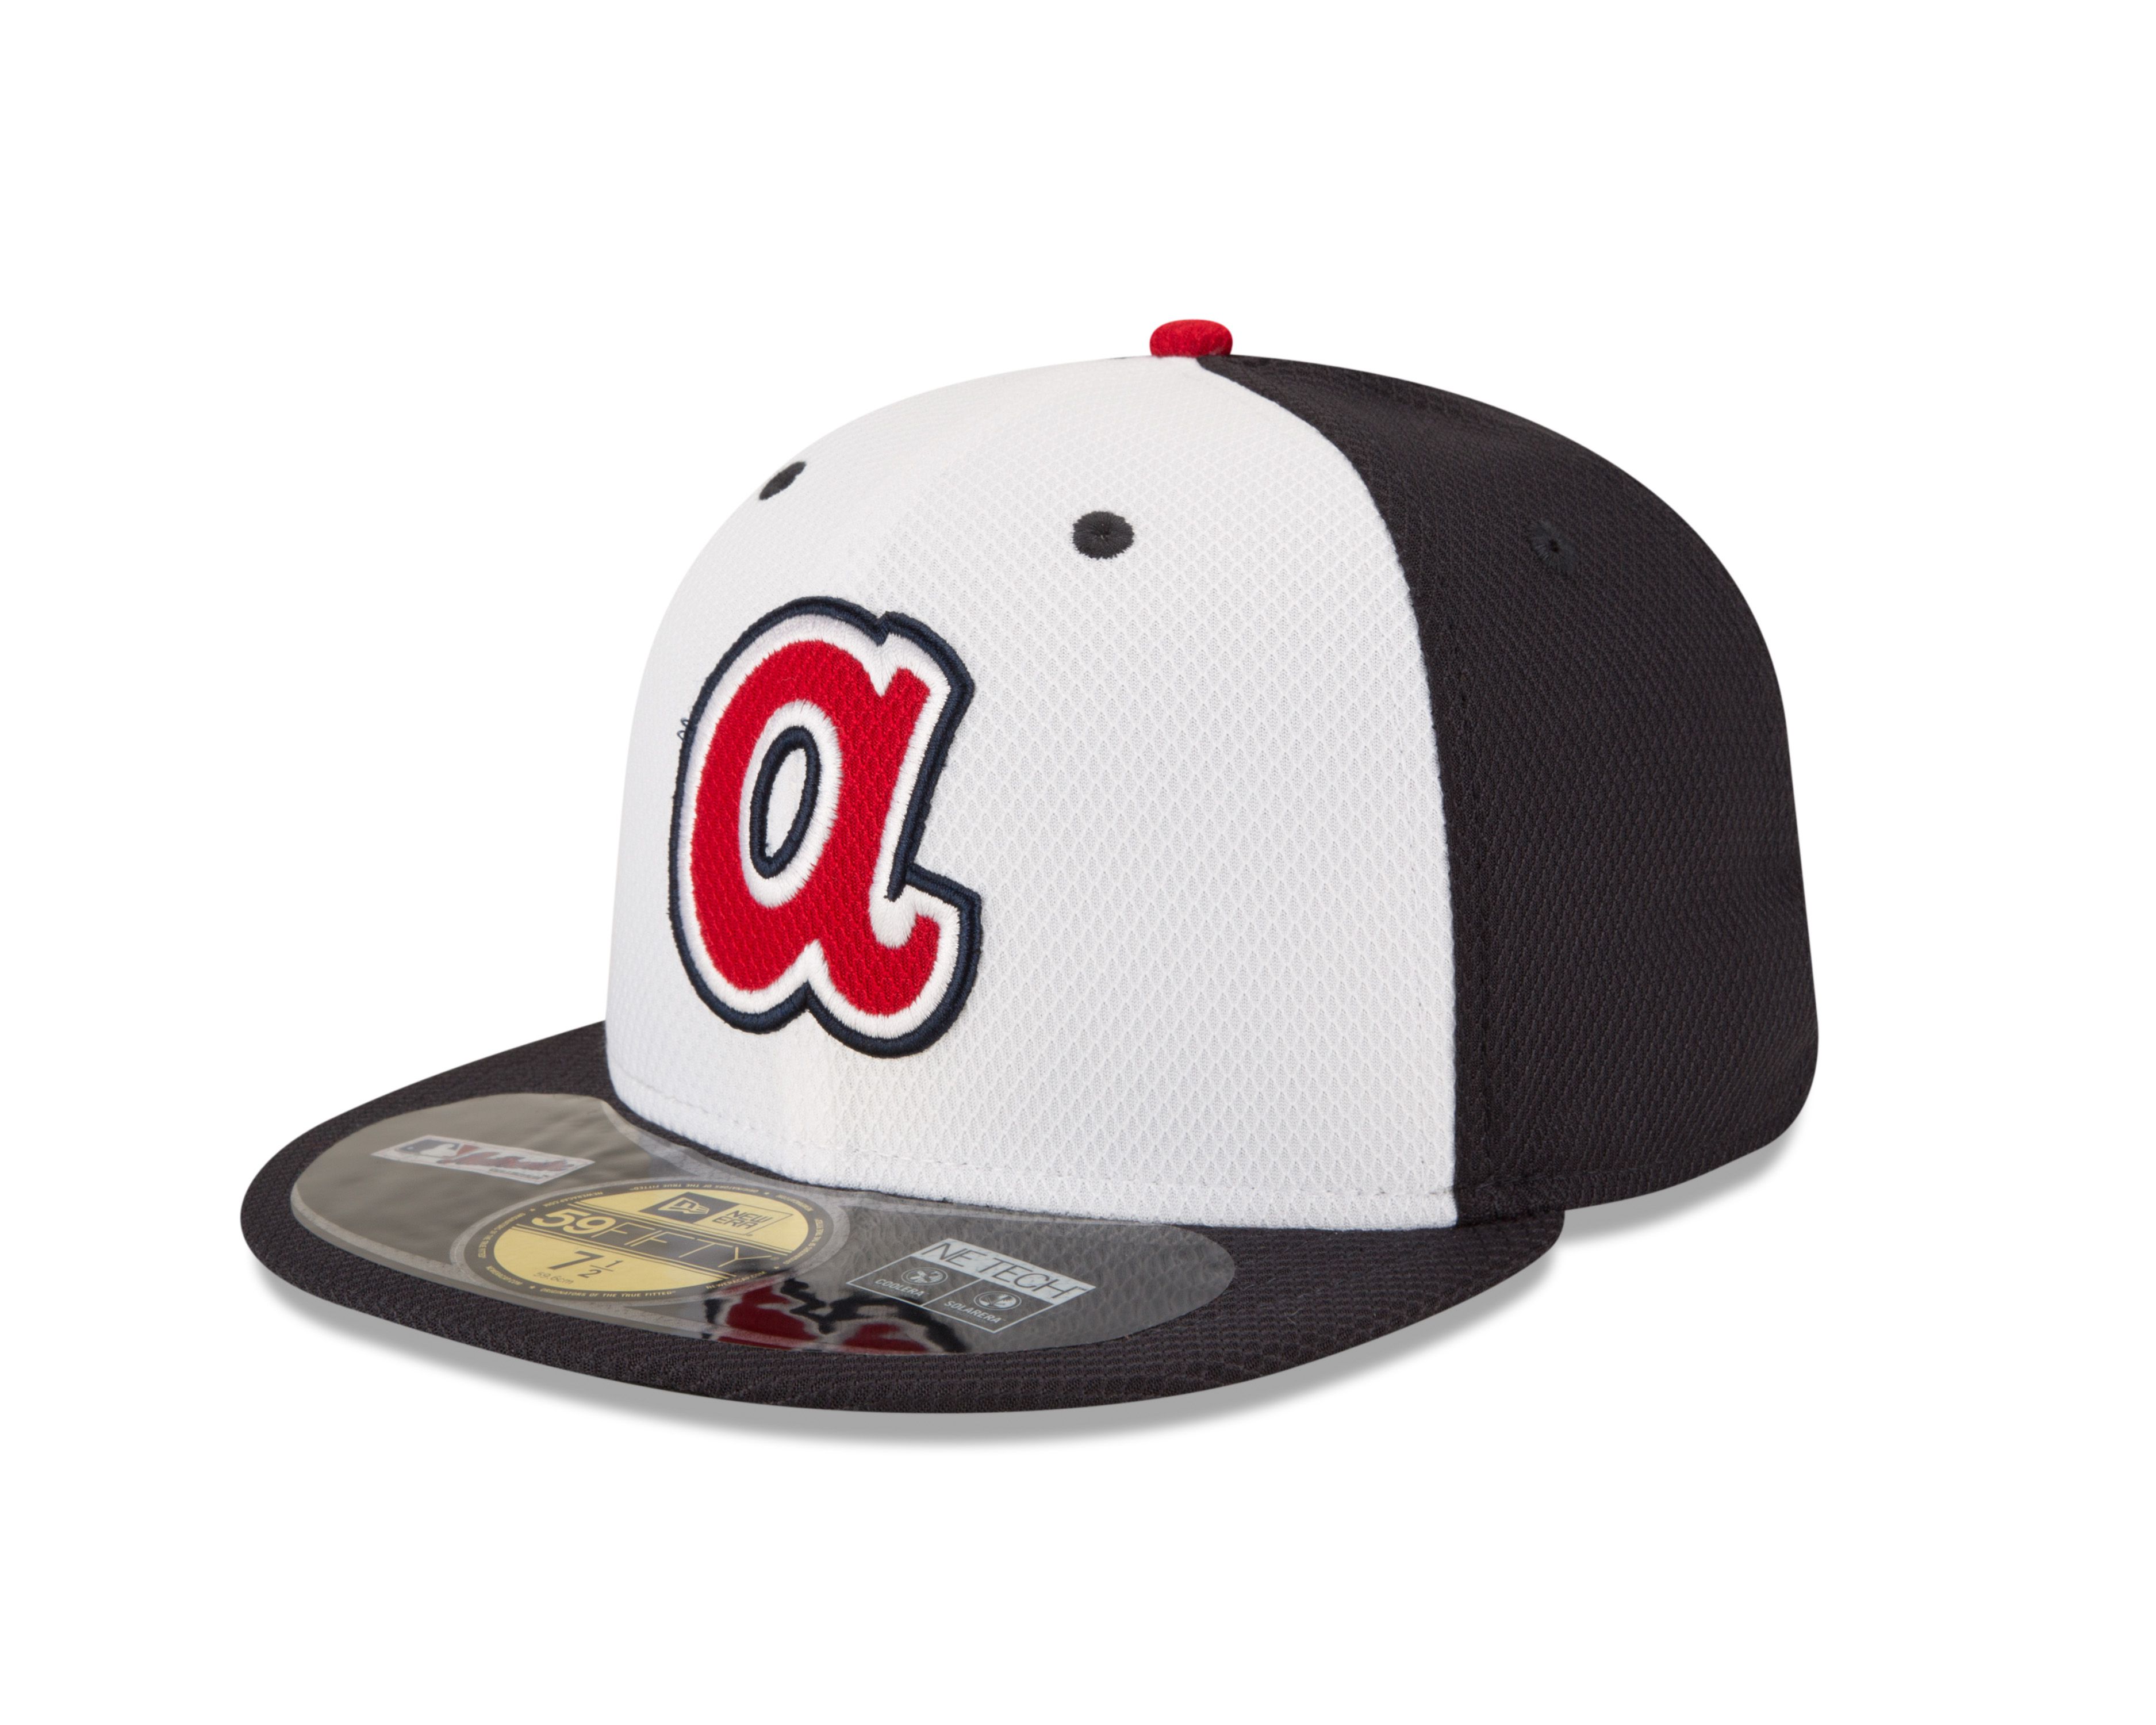 Braves' new cap for spring 2014